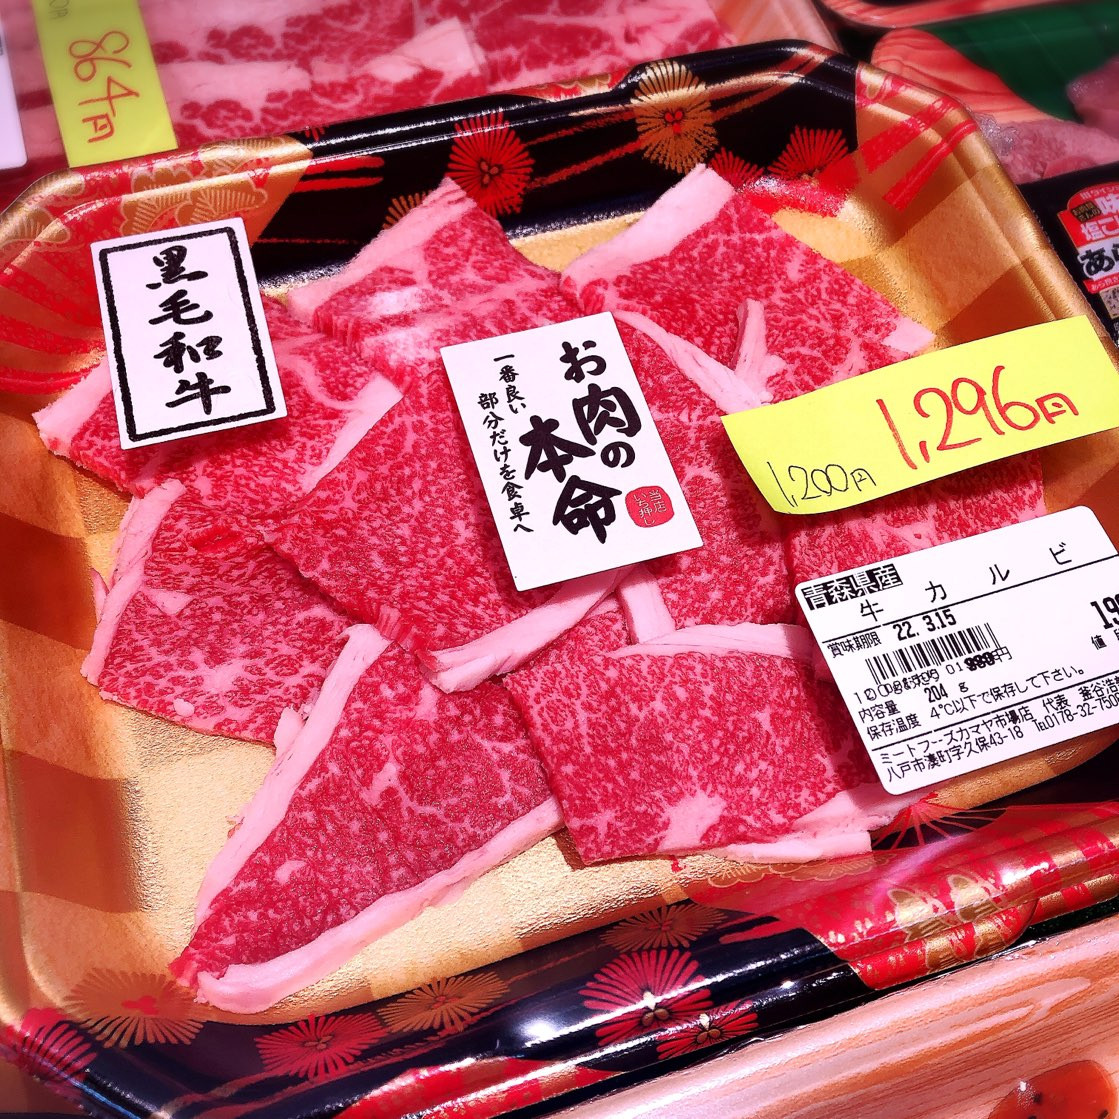 本日は青森県産黒毛和牛カルビがお買得です。